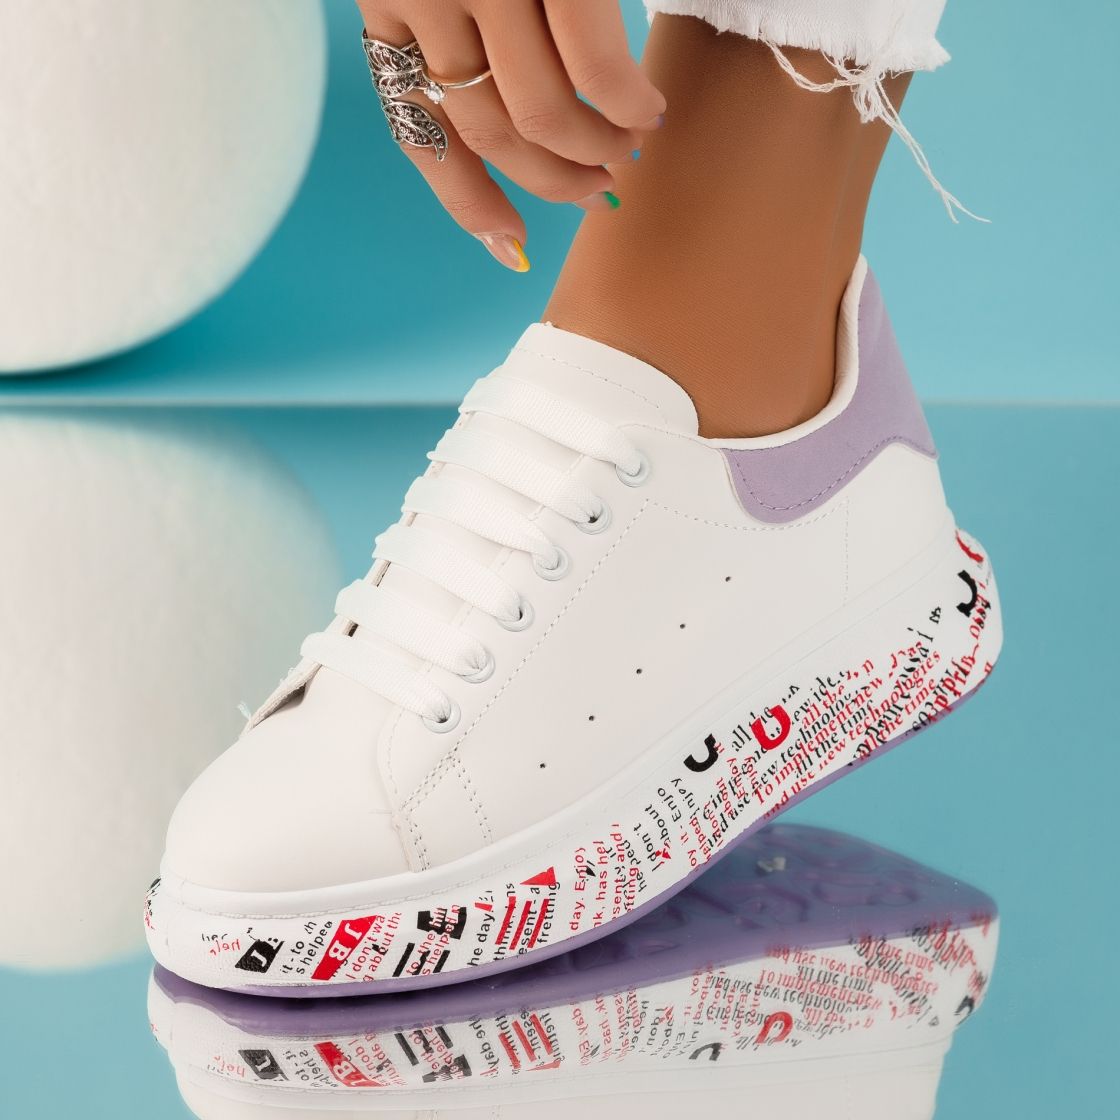 Дамски спортни обувки Melody бял/Mov #4954M